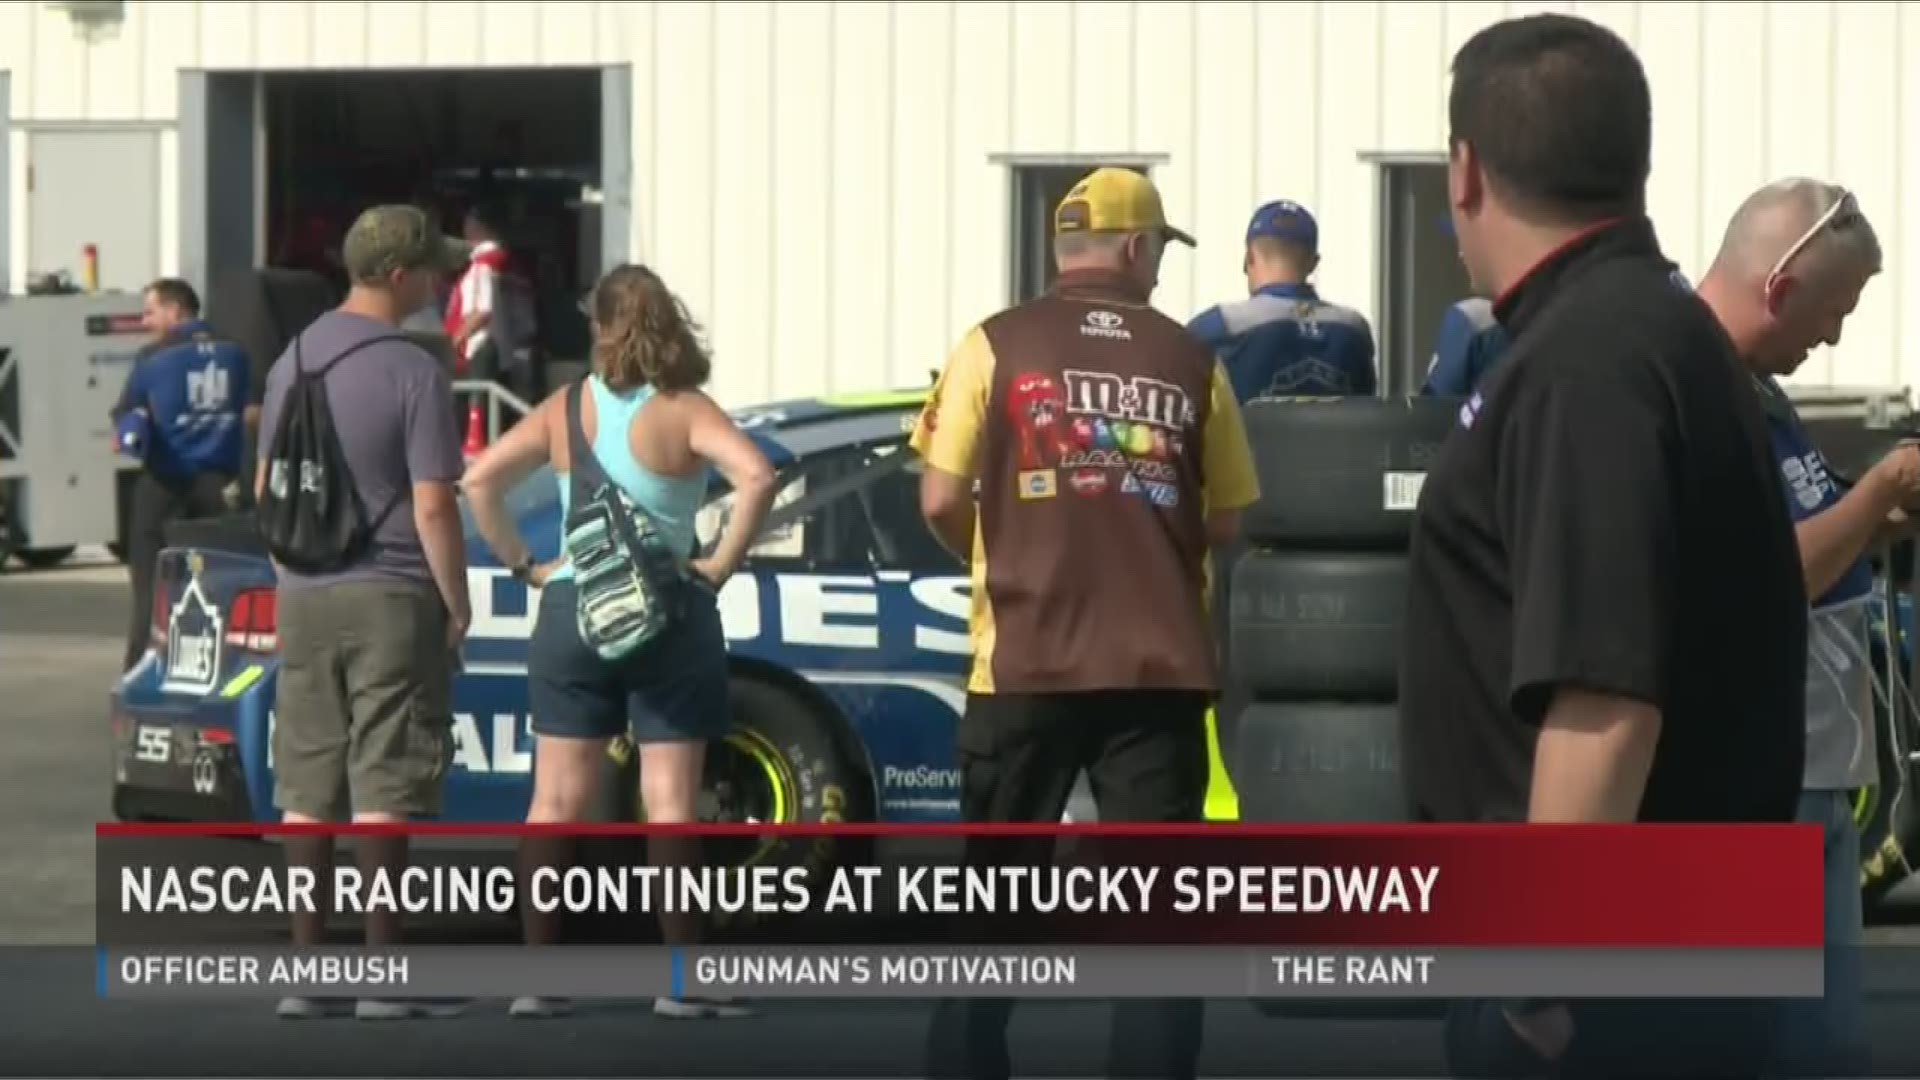 NASCAR racing continues at Kentucky Speedway